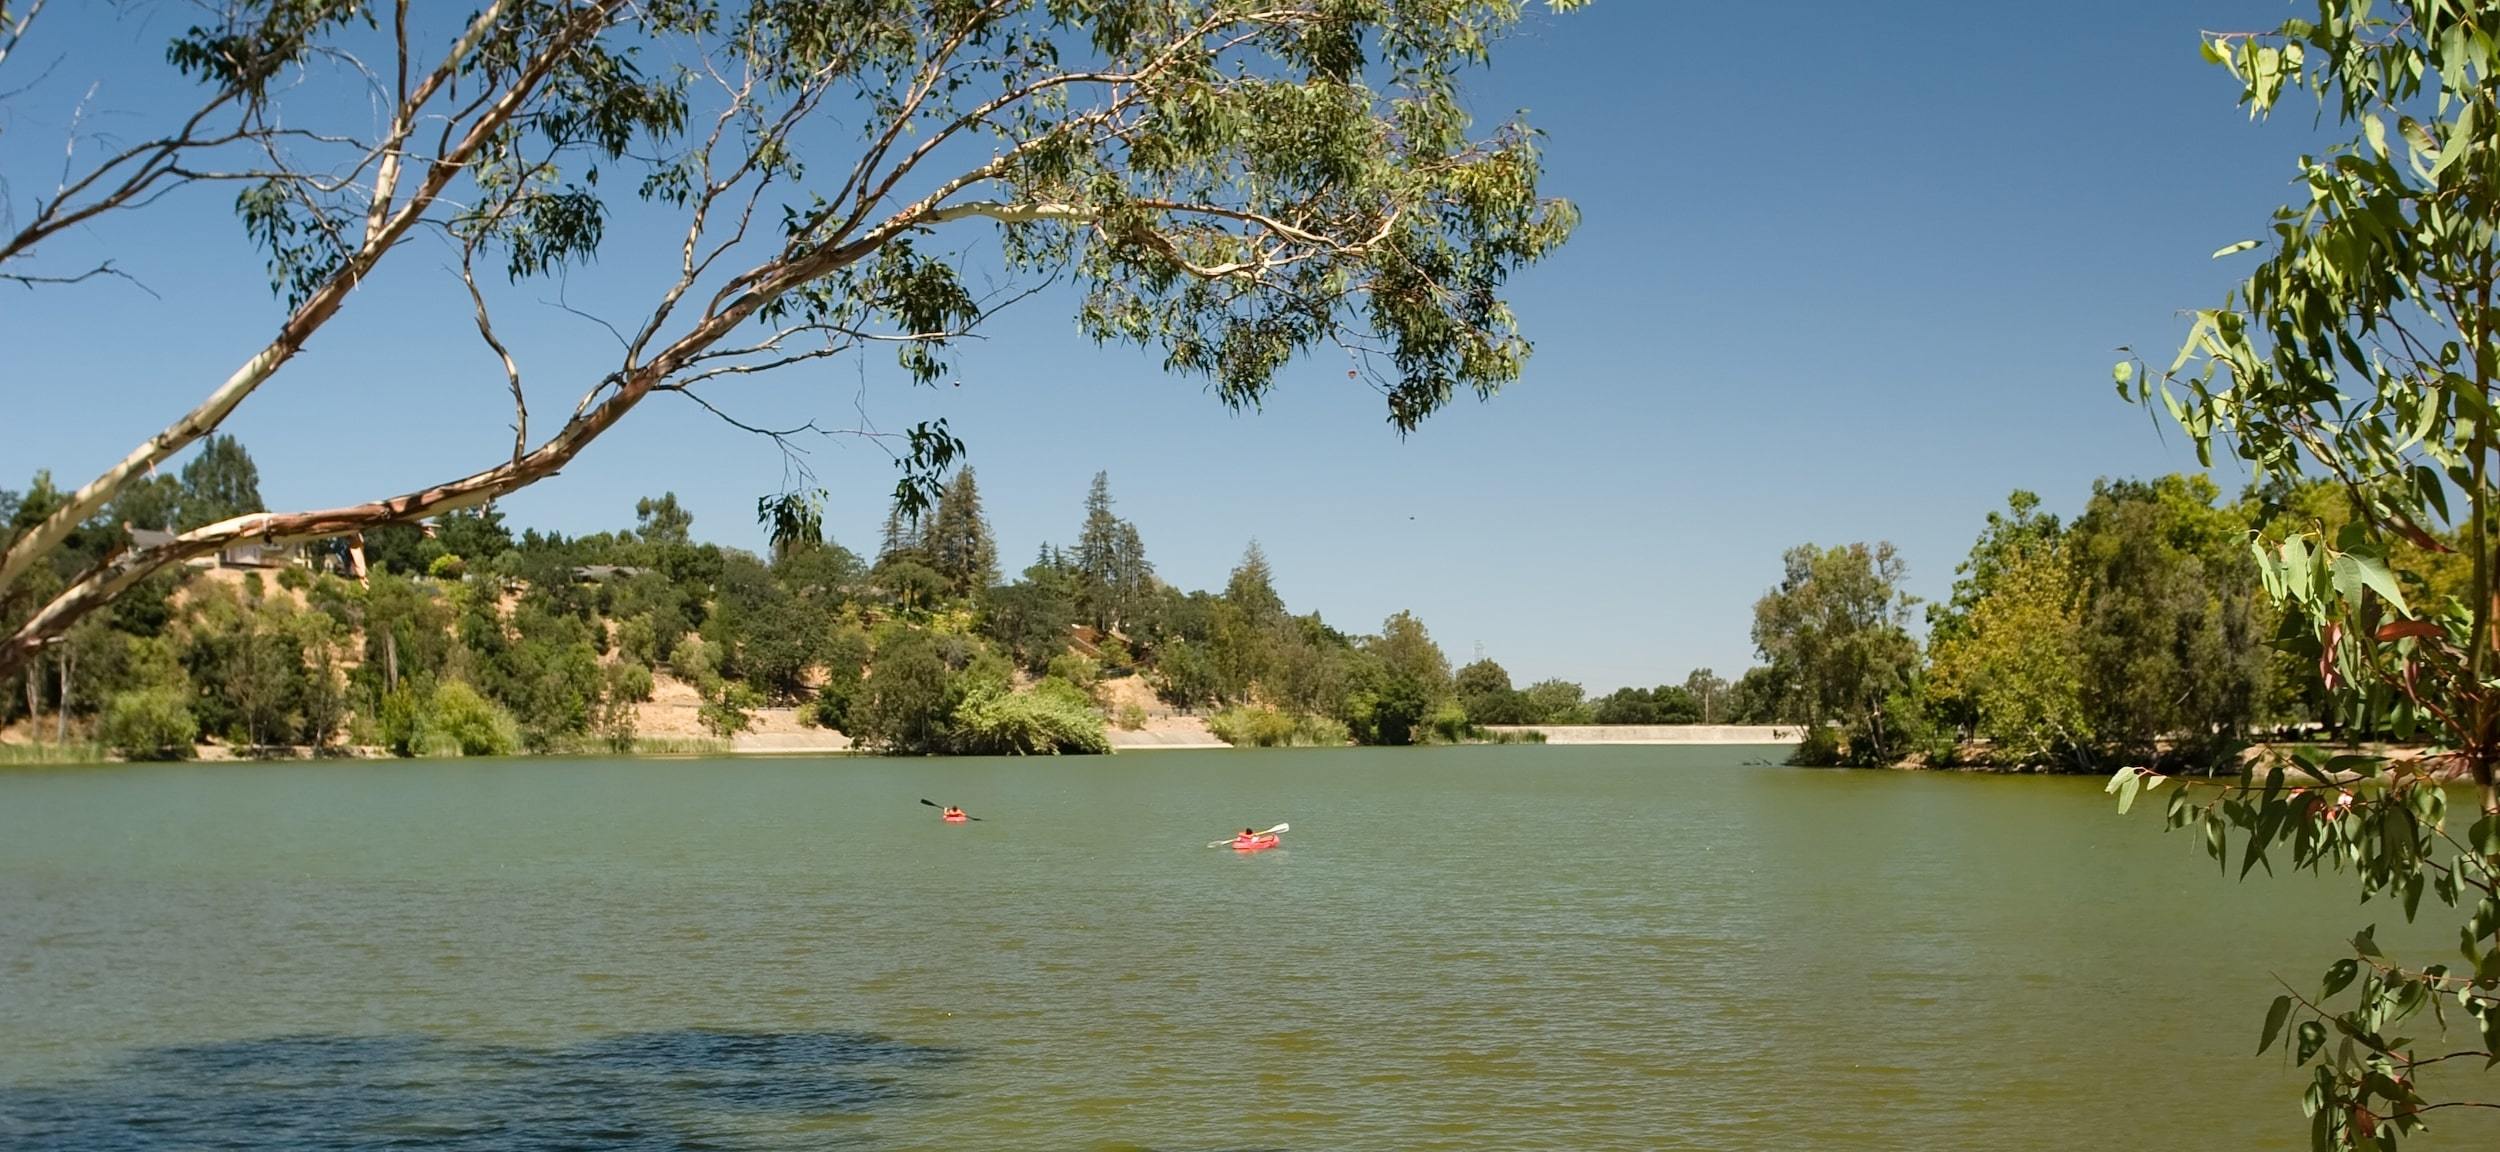 People swimming in Vasona Reservoir in Los Gatos, CA